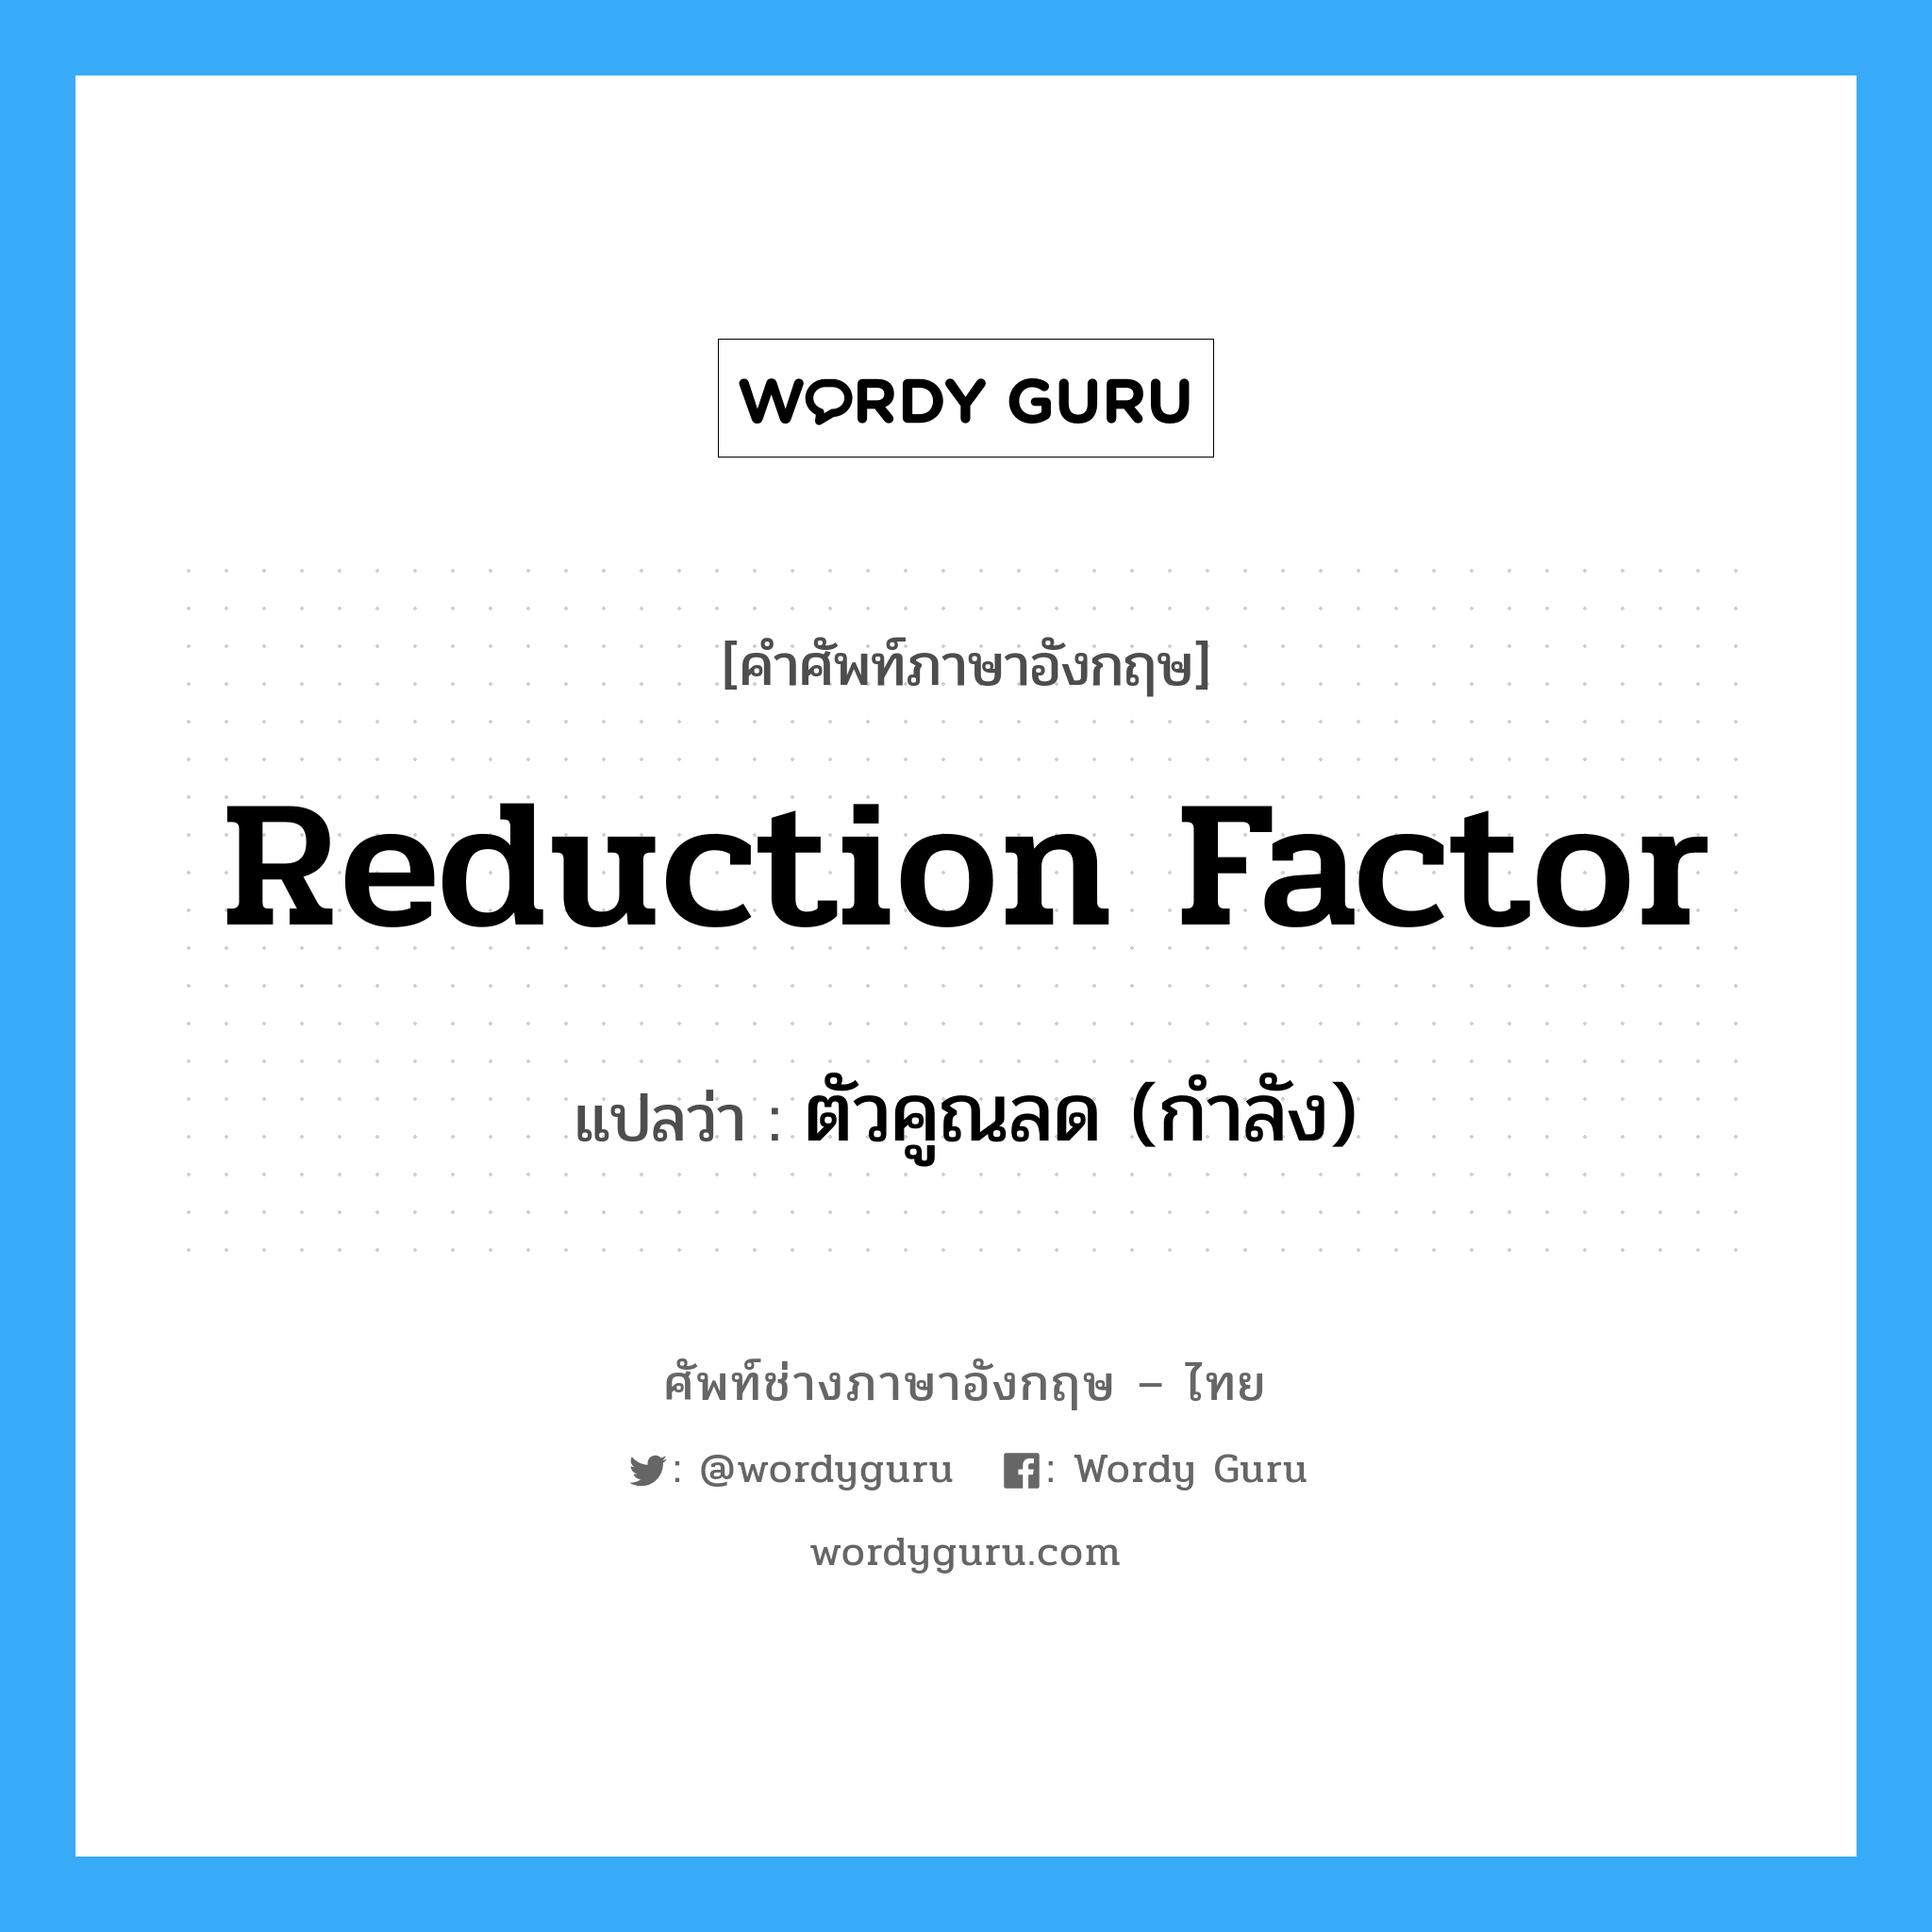 reduction factor แปลว่า?, คำศัพท์ช่างภาษาอังกฤษ - ไทย reduction factor คำศัพท์ภาษาอังกฤษ reduction factor แปลว่า ตัวคูณลด (กำลัง)